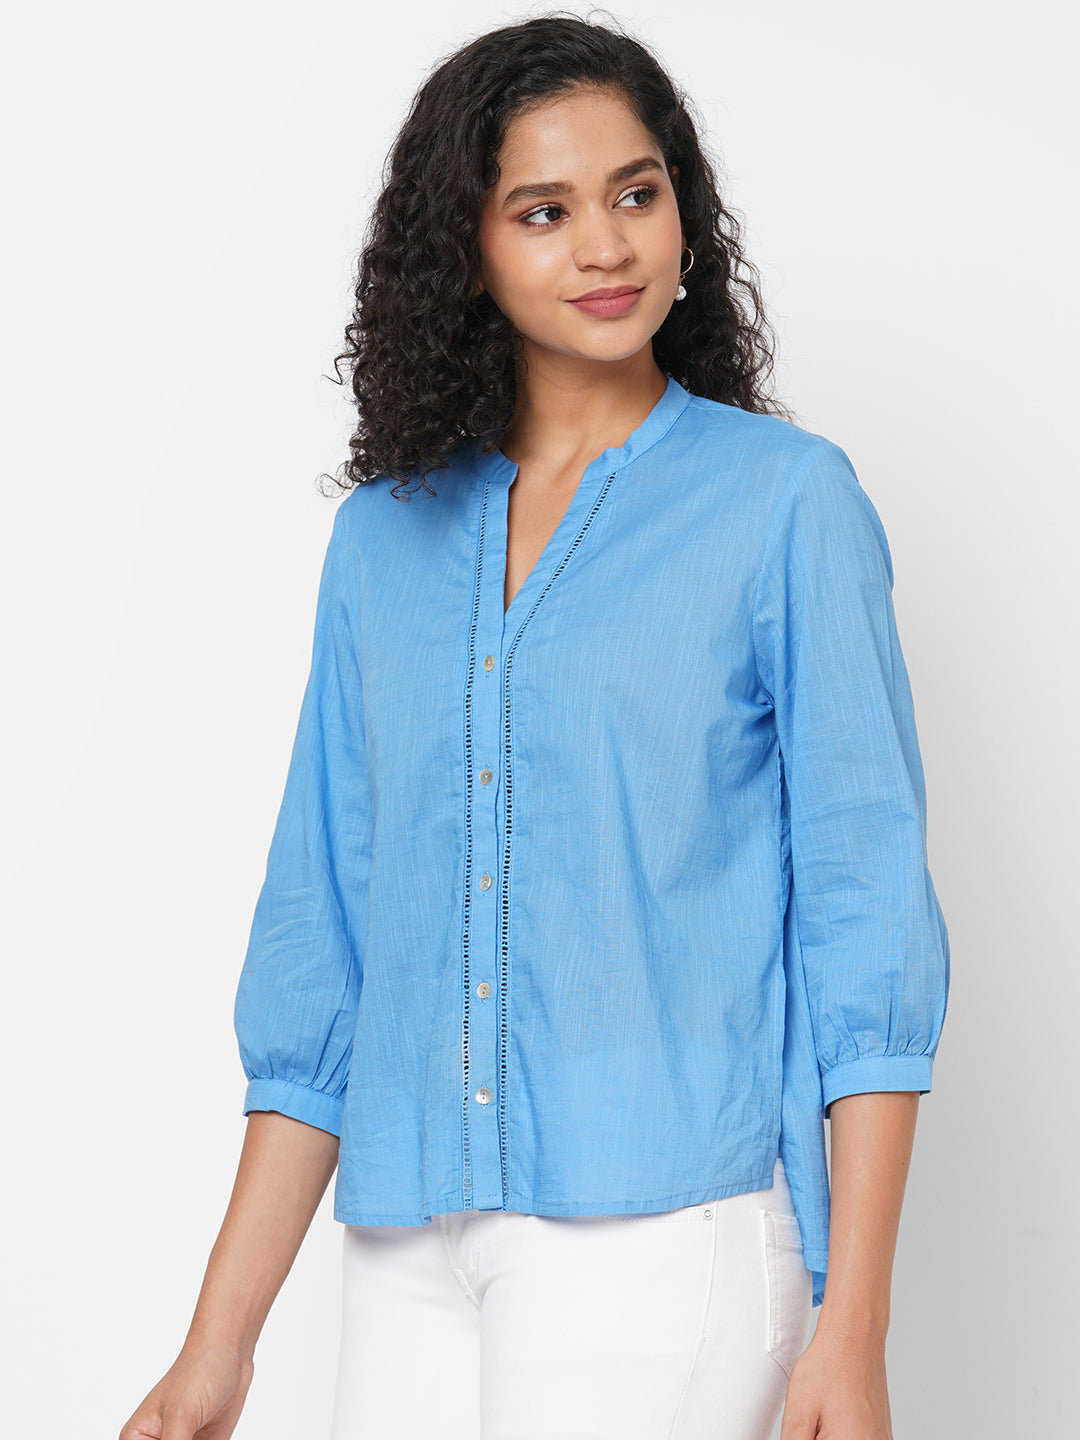 Women's Blue Cotton Regular Fit Blouse